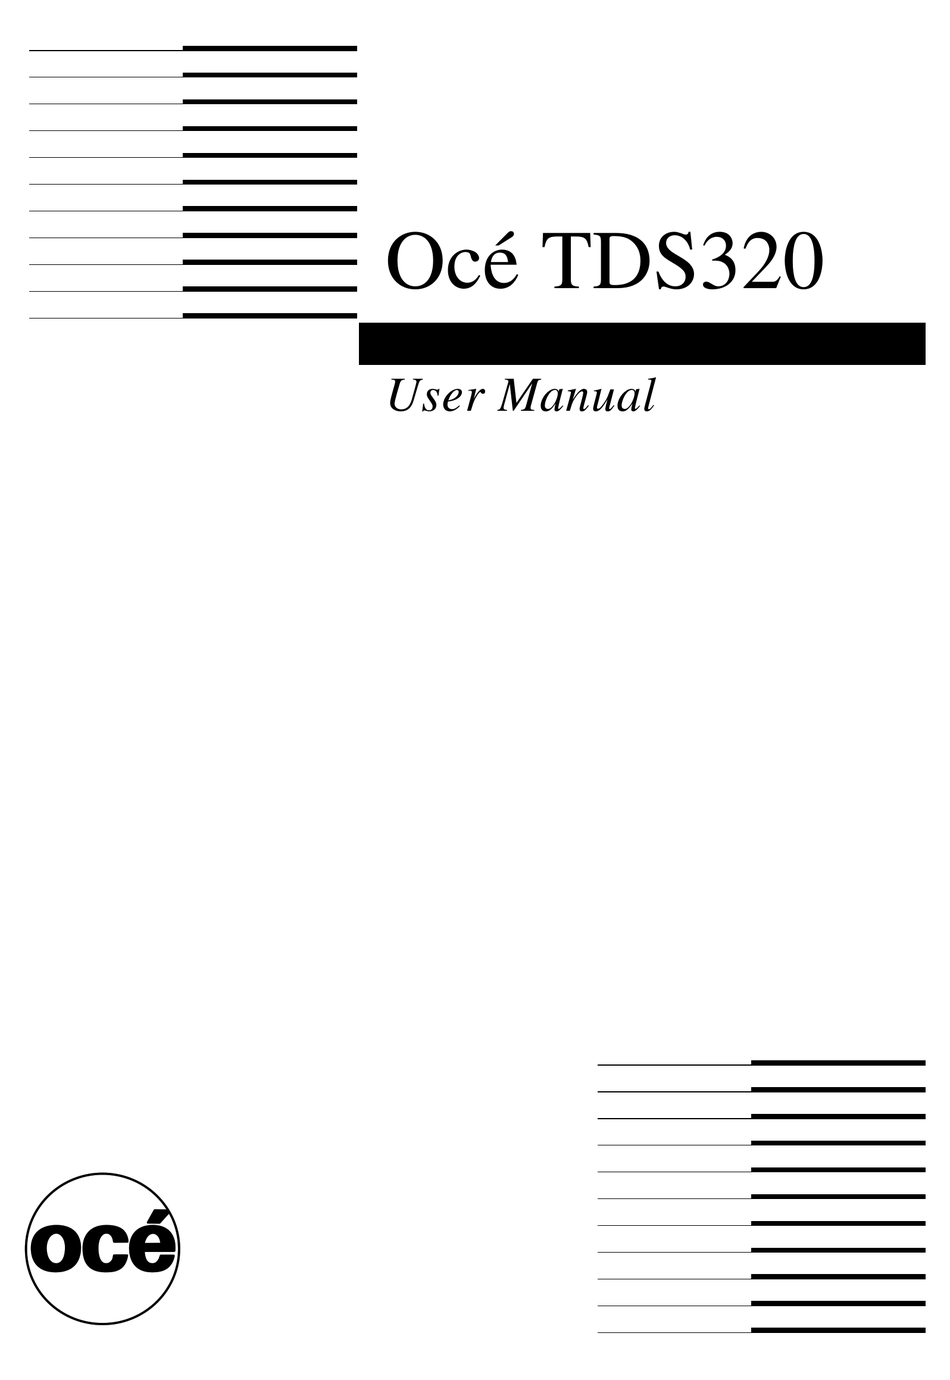 ocenaudio user manual pdf